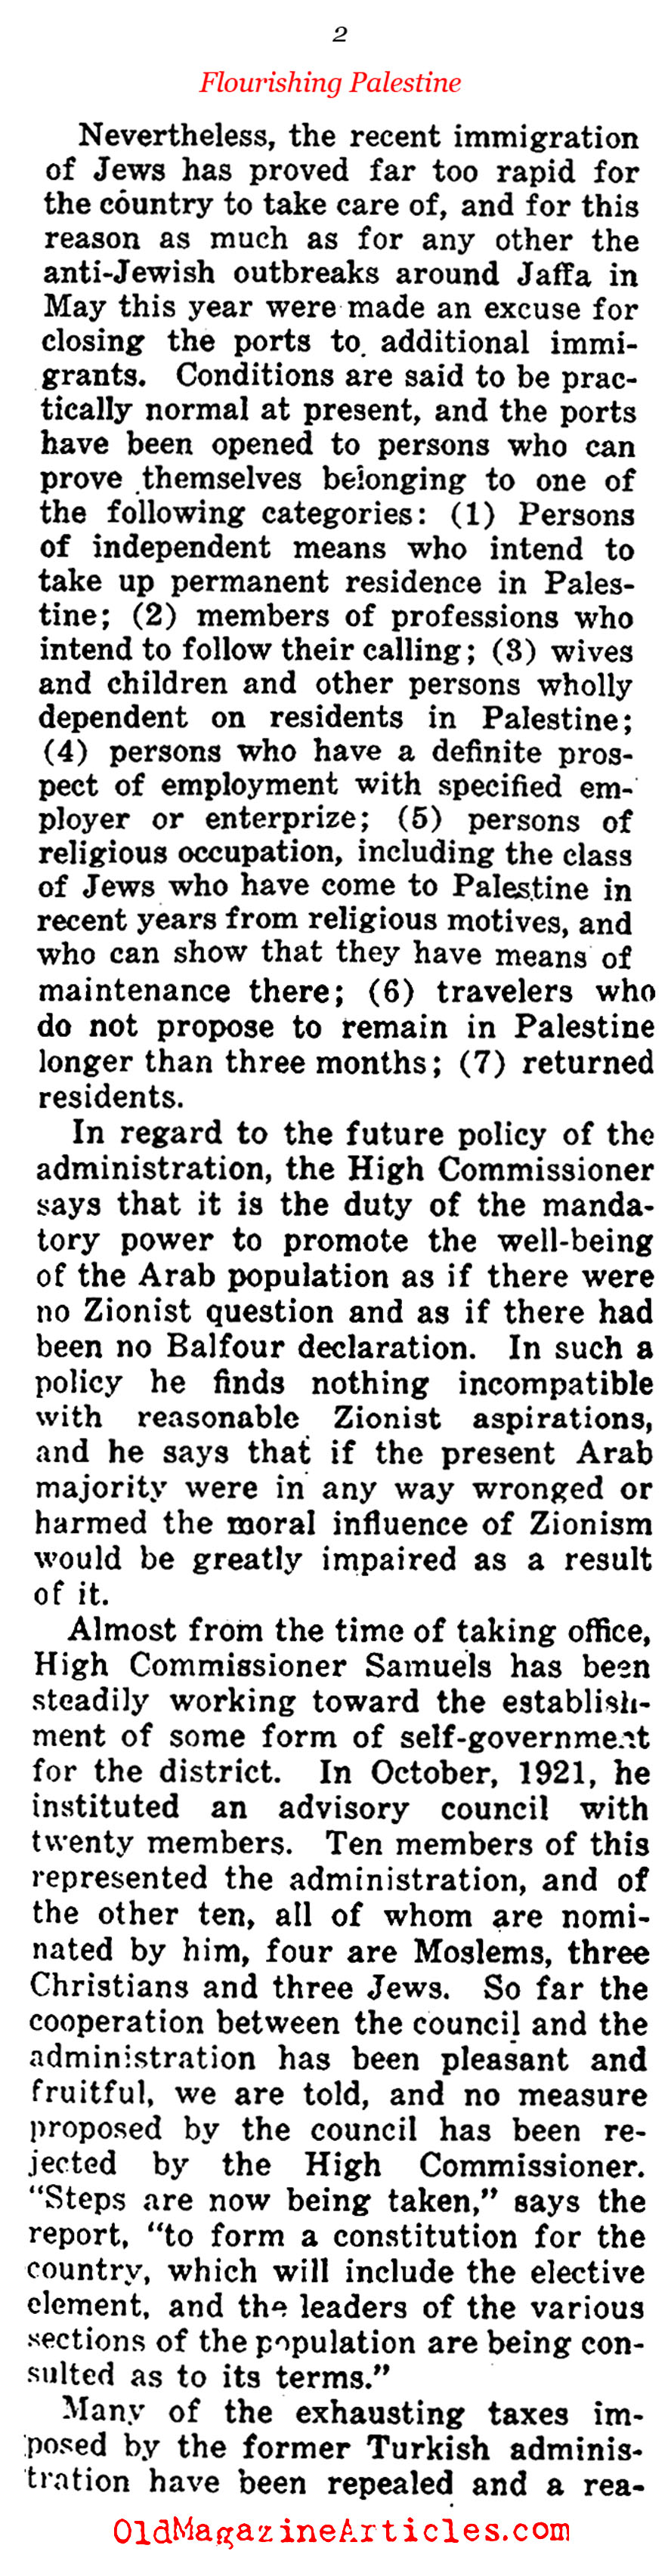 British Palestine Thrives (Current Opinion, 1922)